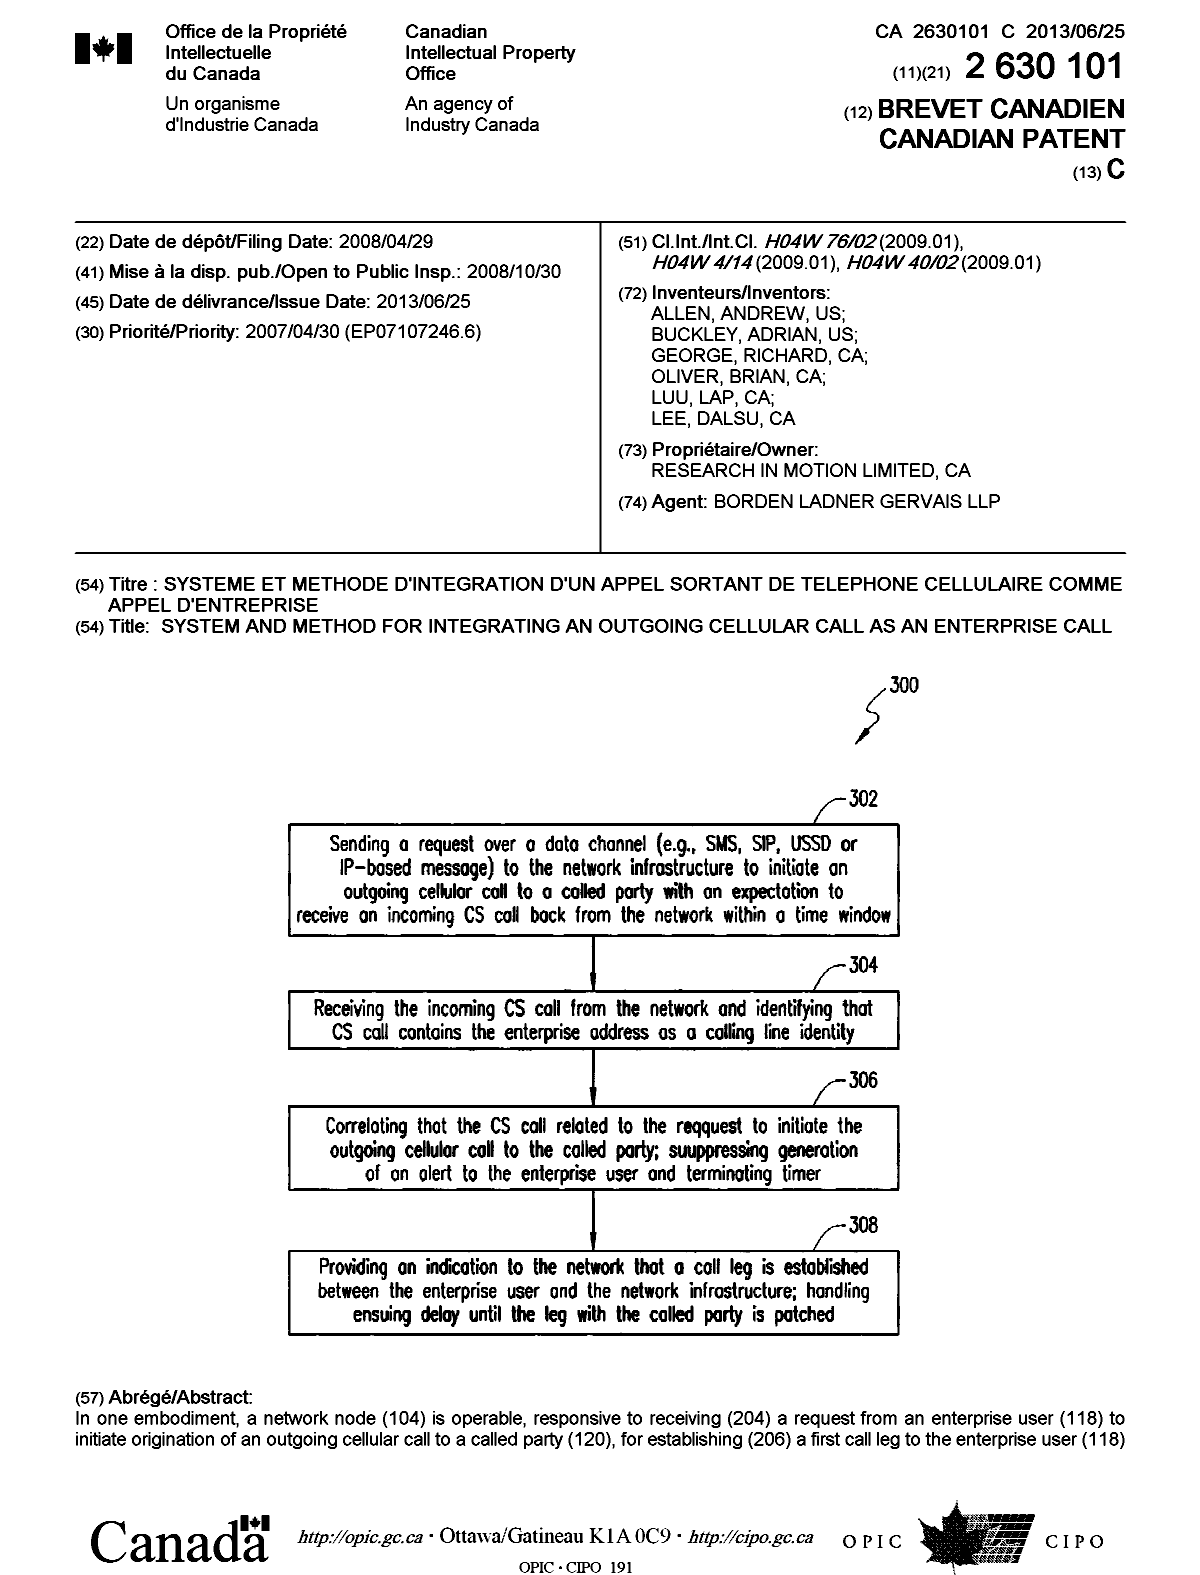 Document de brevet canadien 2630101. Page couverture 20130605. Image 1 de 2